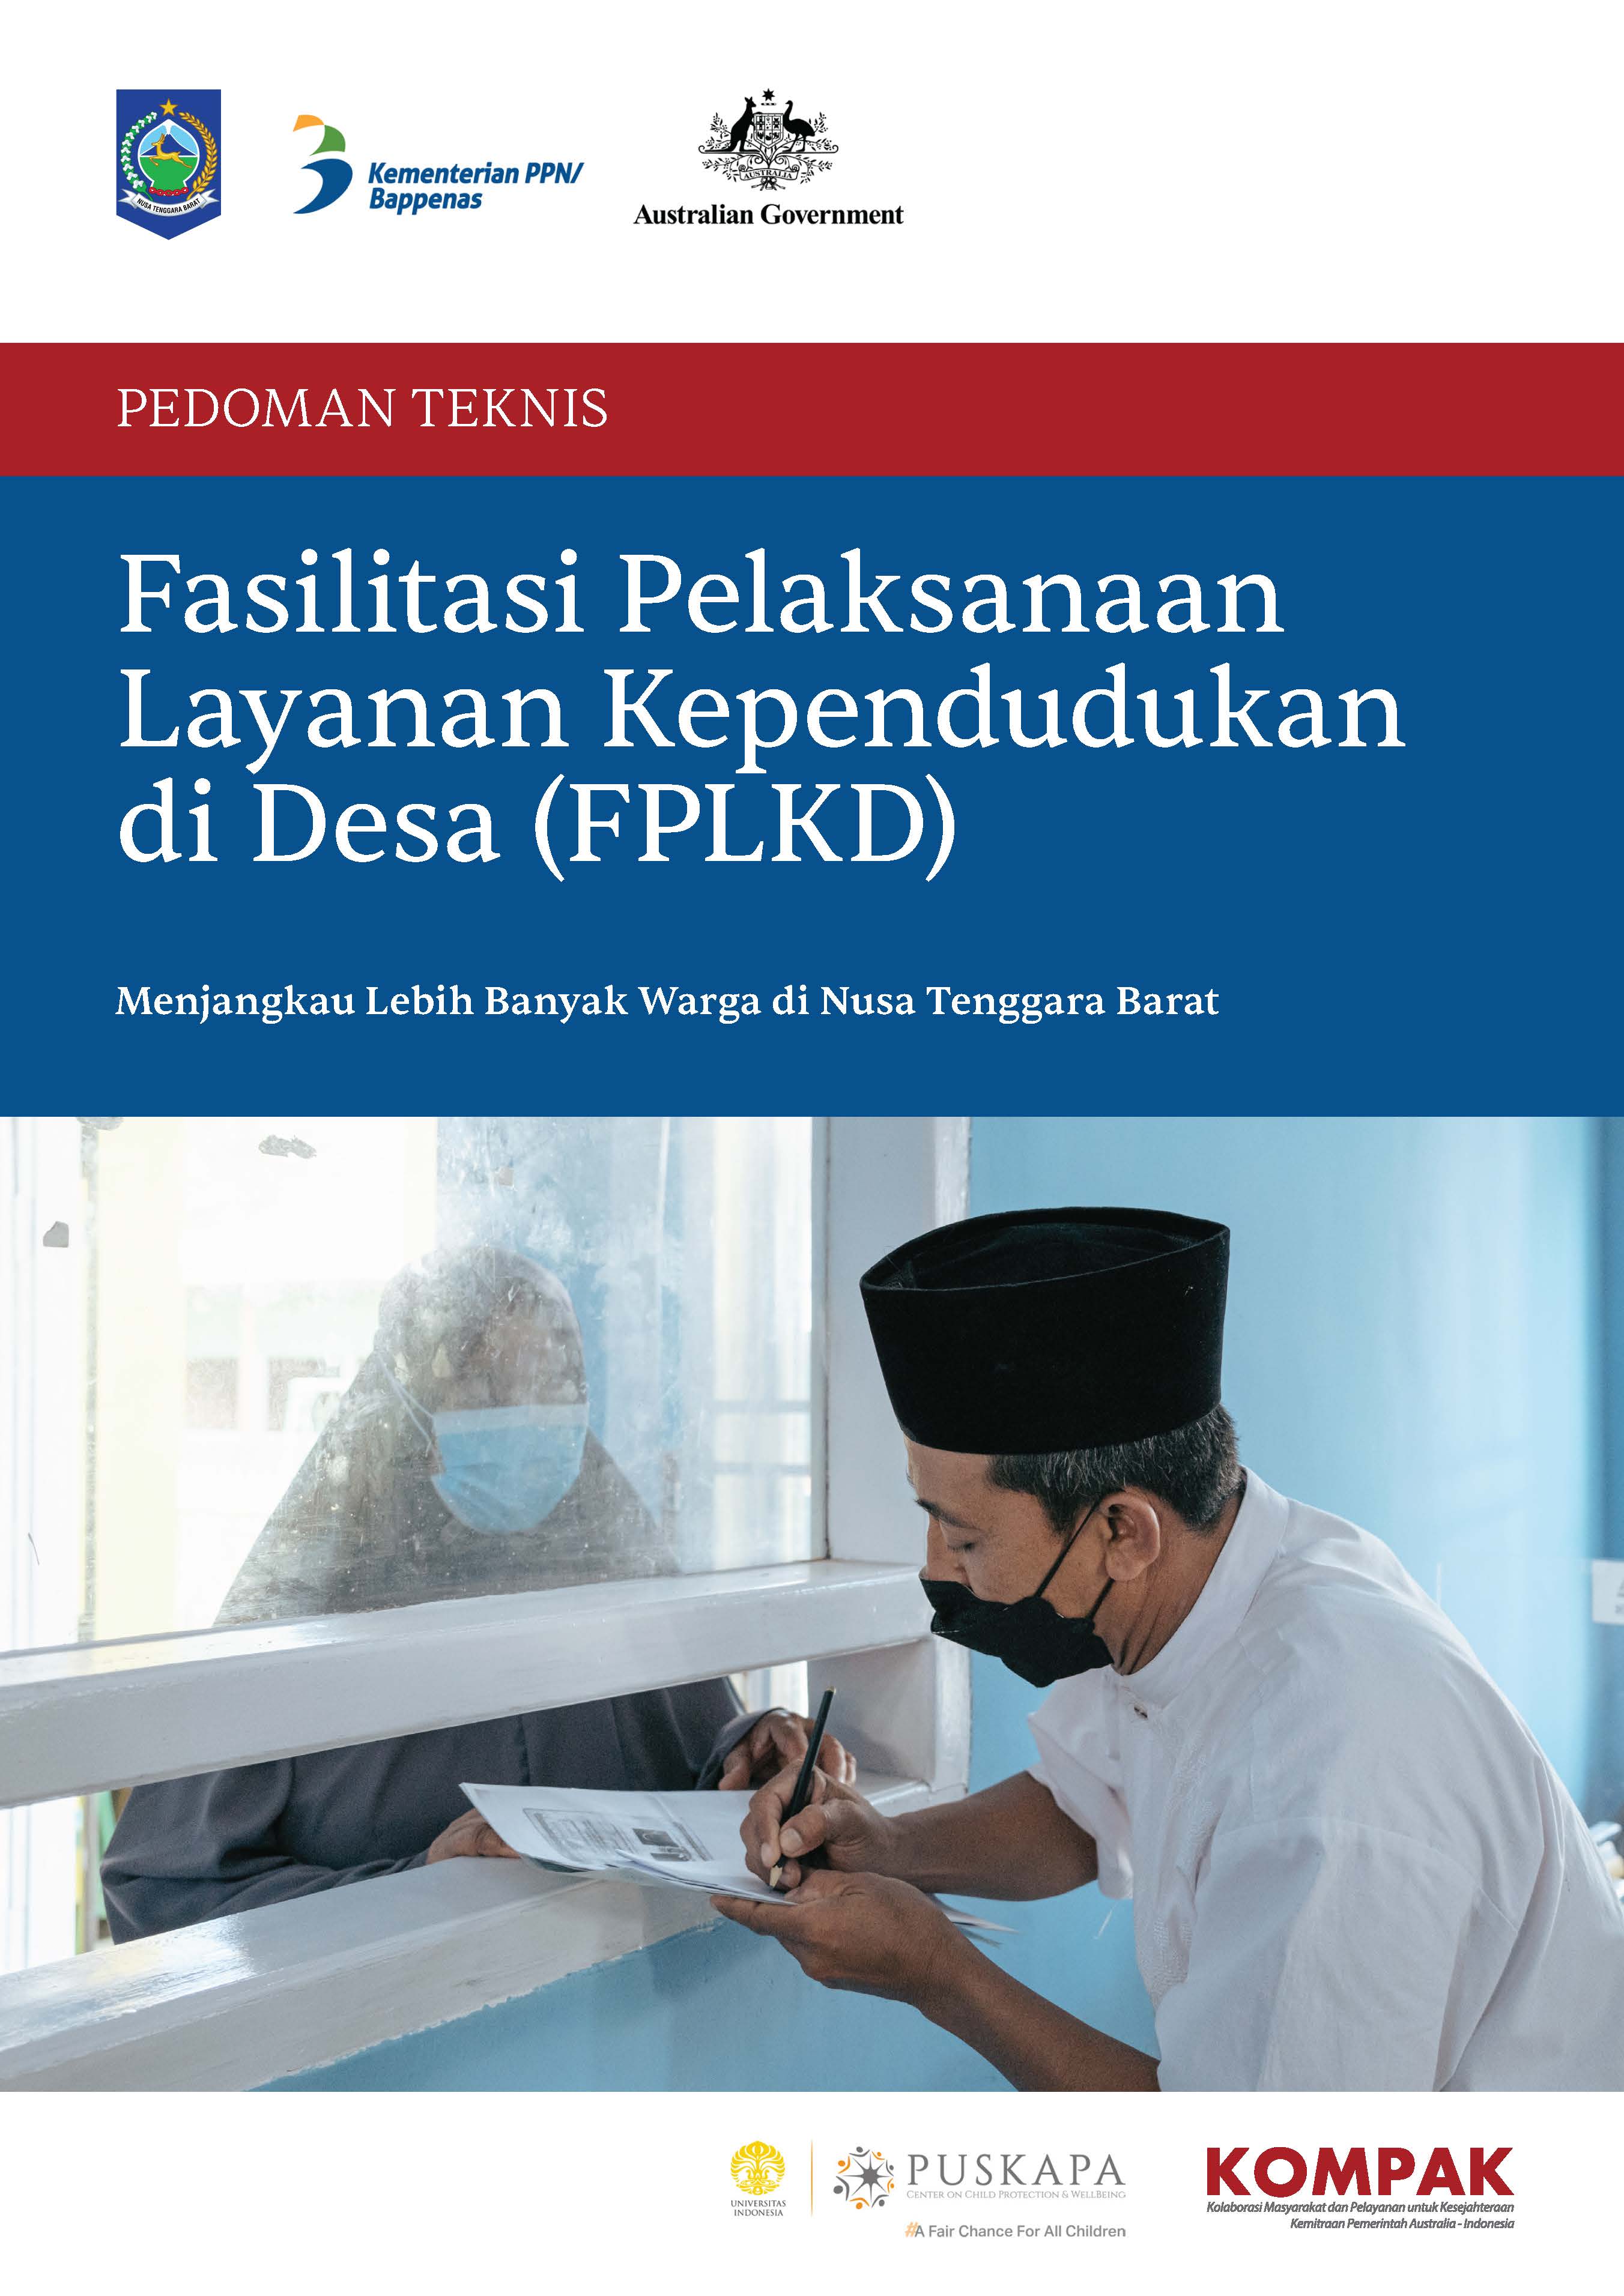 Pedoman Teknis Fasilitasi Pelaksanaan Layanan Kependudukan di Desa (FPLKD) di Nusa Tenggara Barat (NTB)